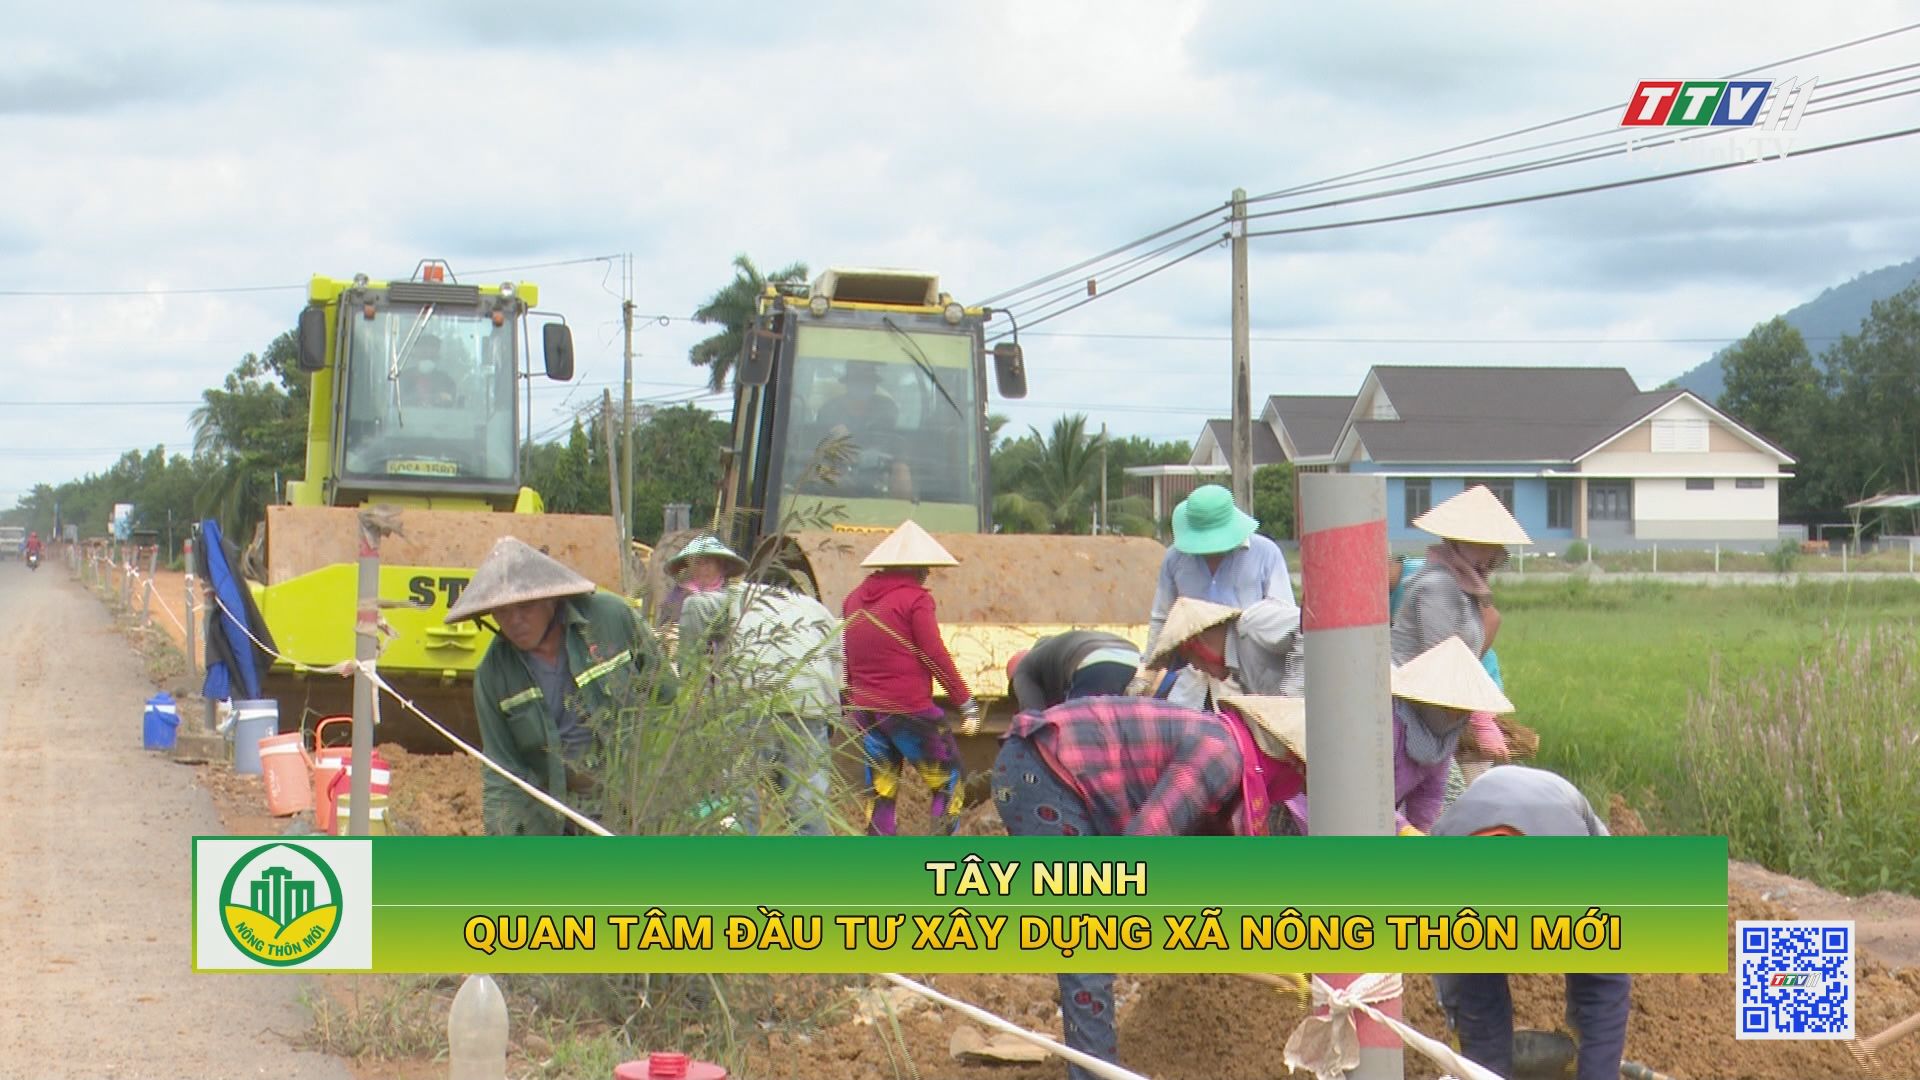 Tây Ninh quan tâm đầu tư xây dựng xã nông thôn mới | Tây Ninh xây dựng nông thôn mới | TayNinhTV